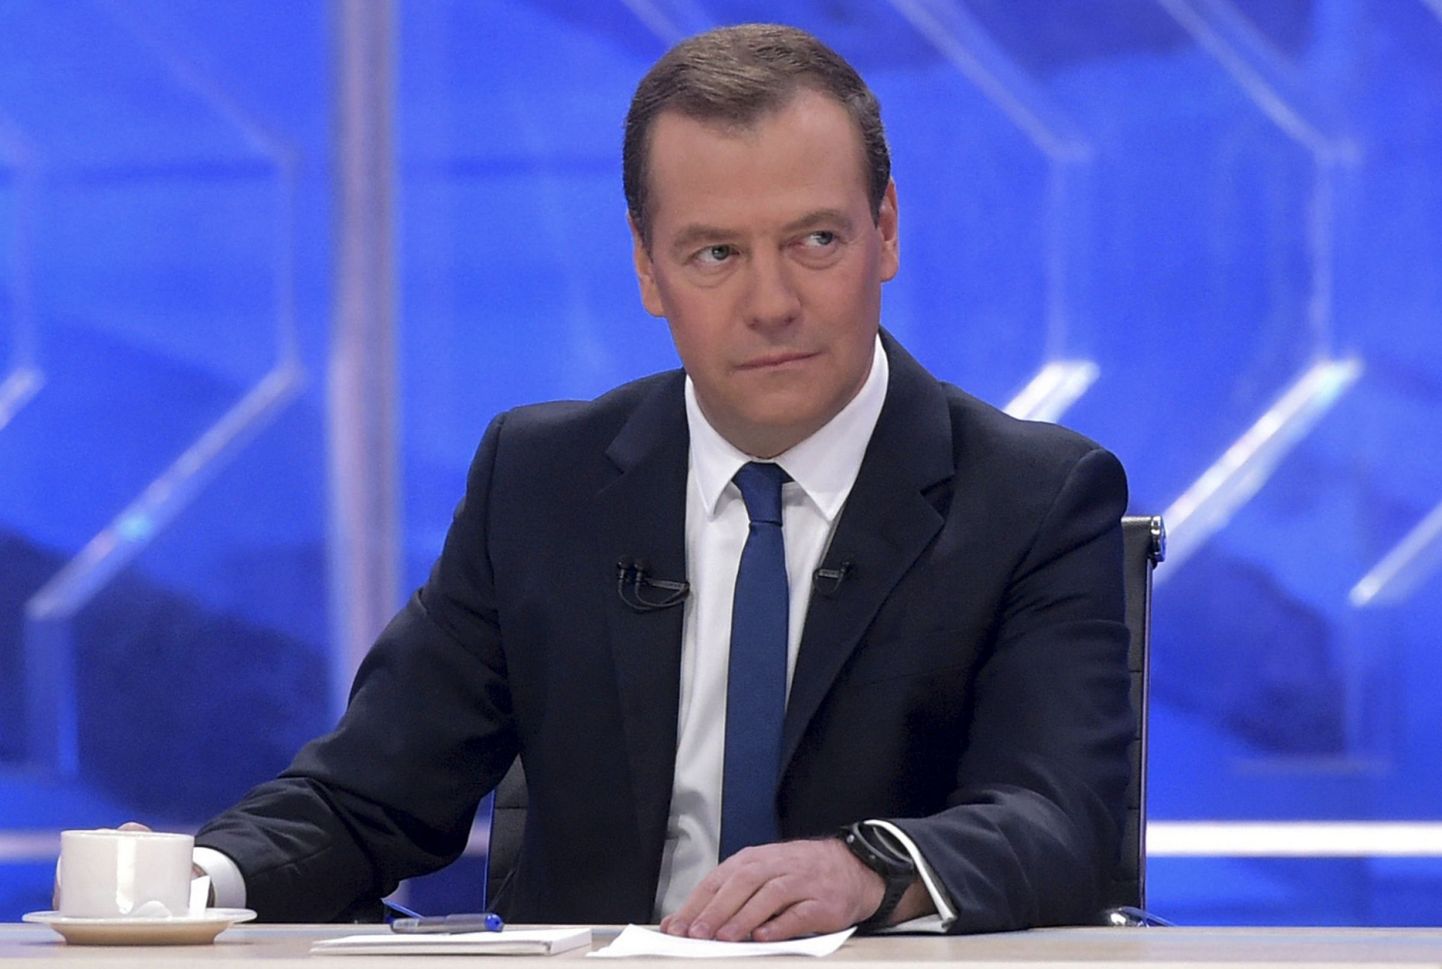 Nimekirjast leiame ka Venemaa peaministri Dmitri Medvedevi.